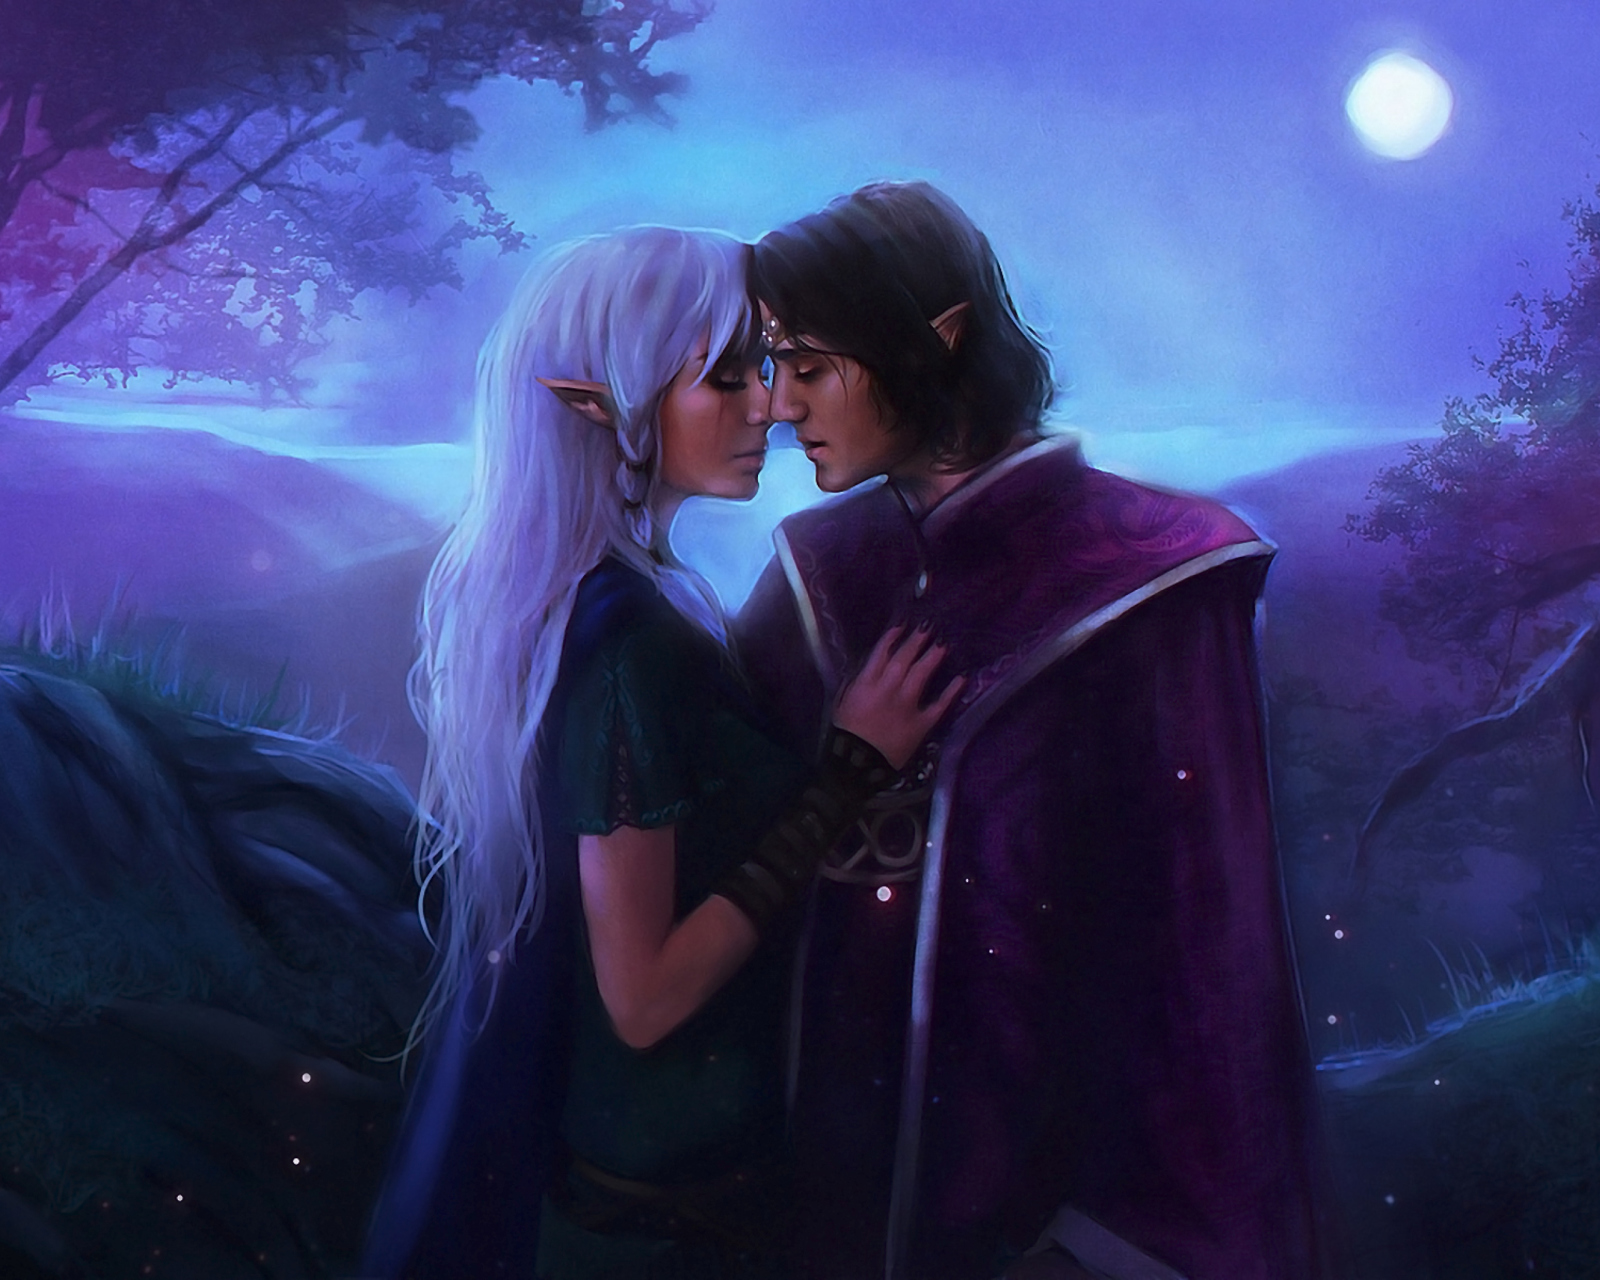 Das Love In Moonlight Fantasy Wallpaper 1600x1280